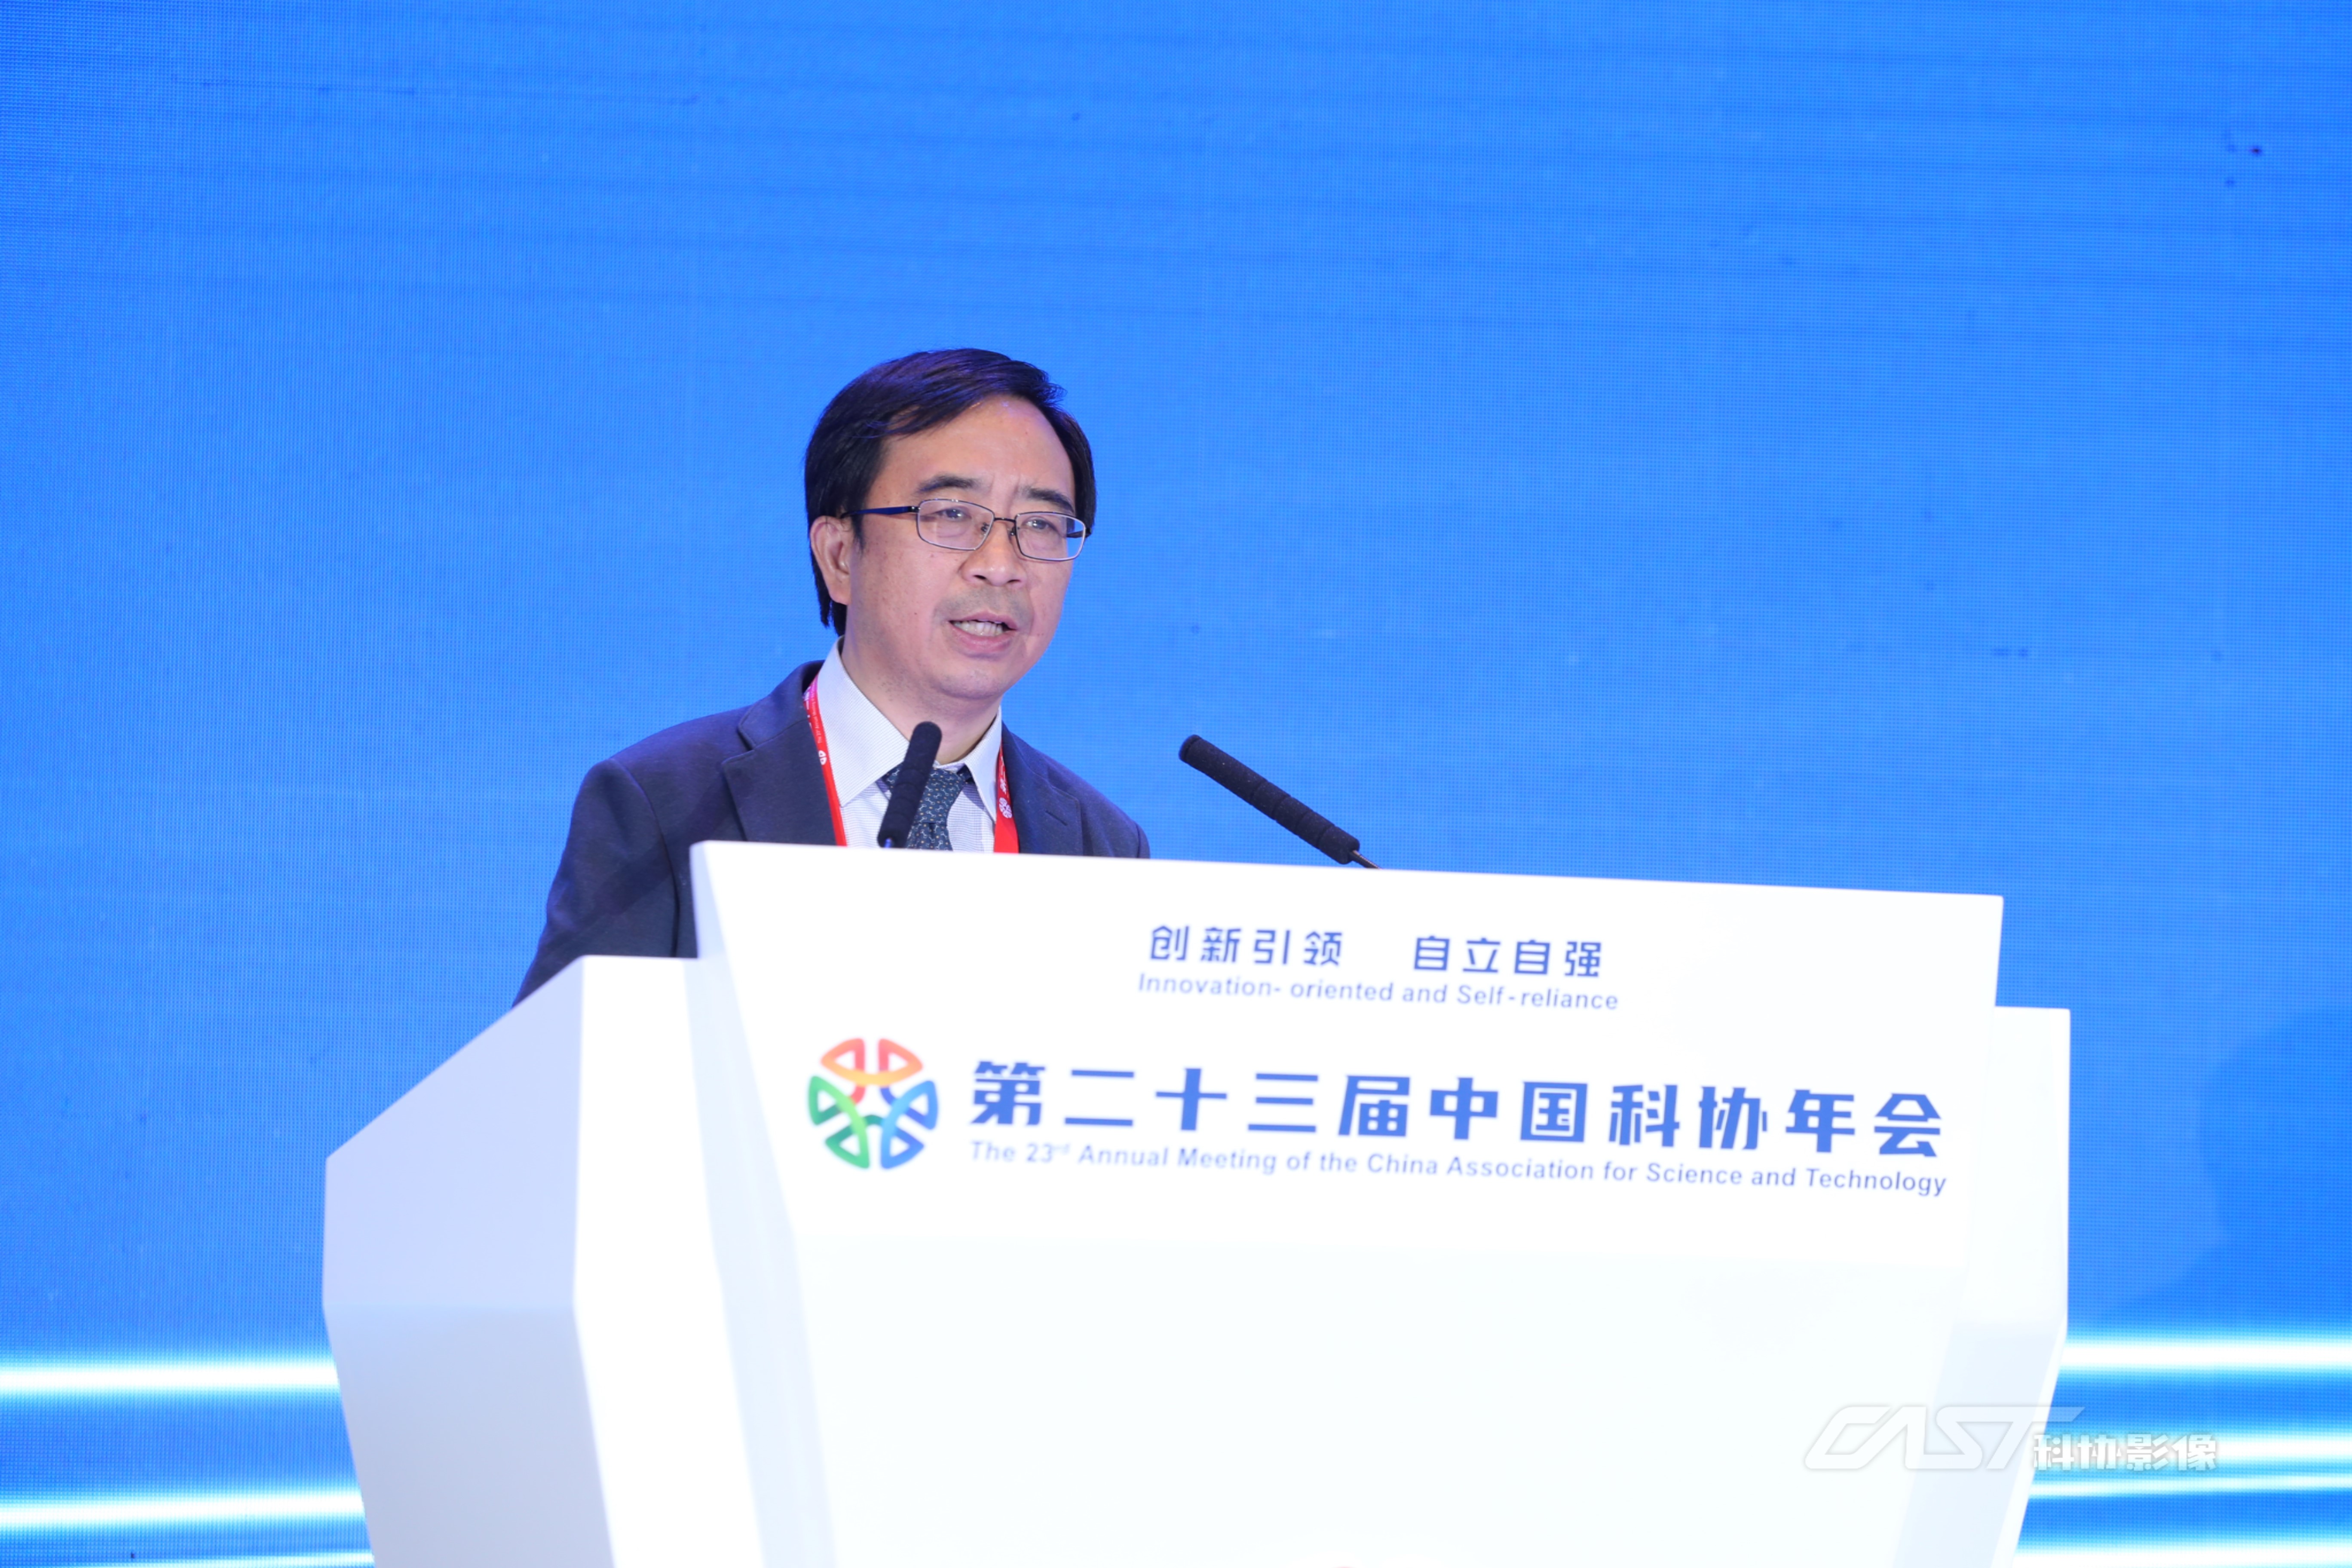 第二十三届中国科协年会开幕式在京举办